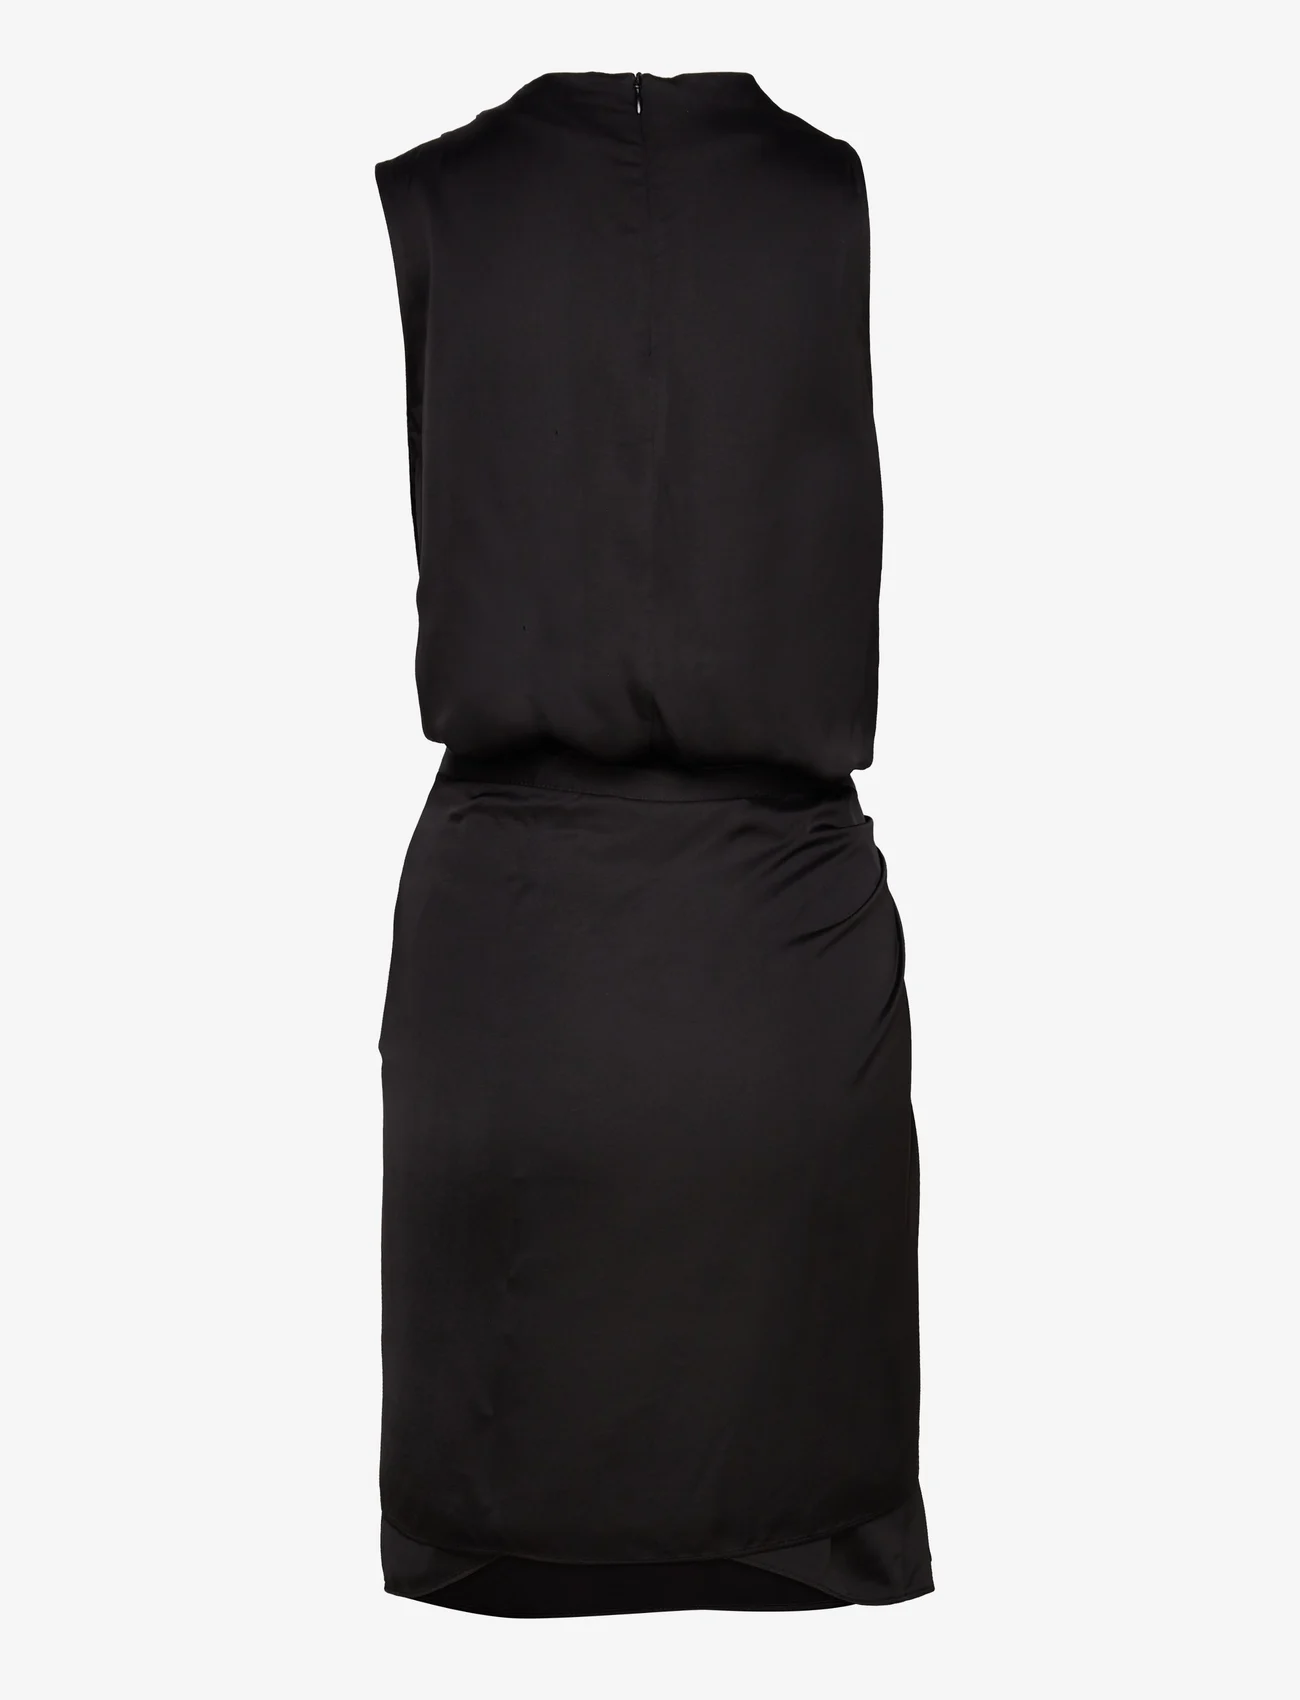 Ahlvar Gallery - Telly short dress - odzież imprezowa w cenach outletowych - black - 1